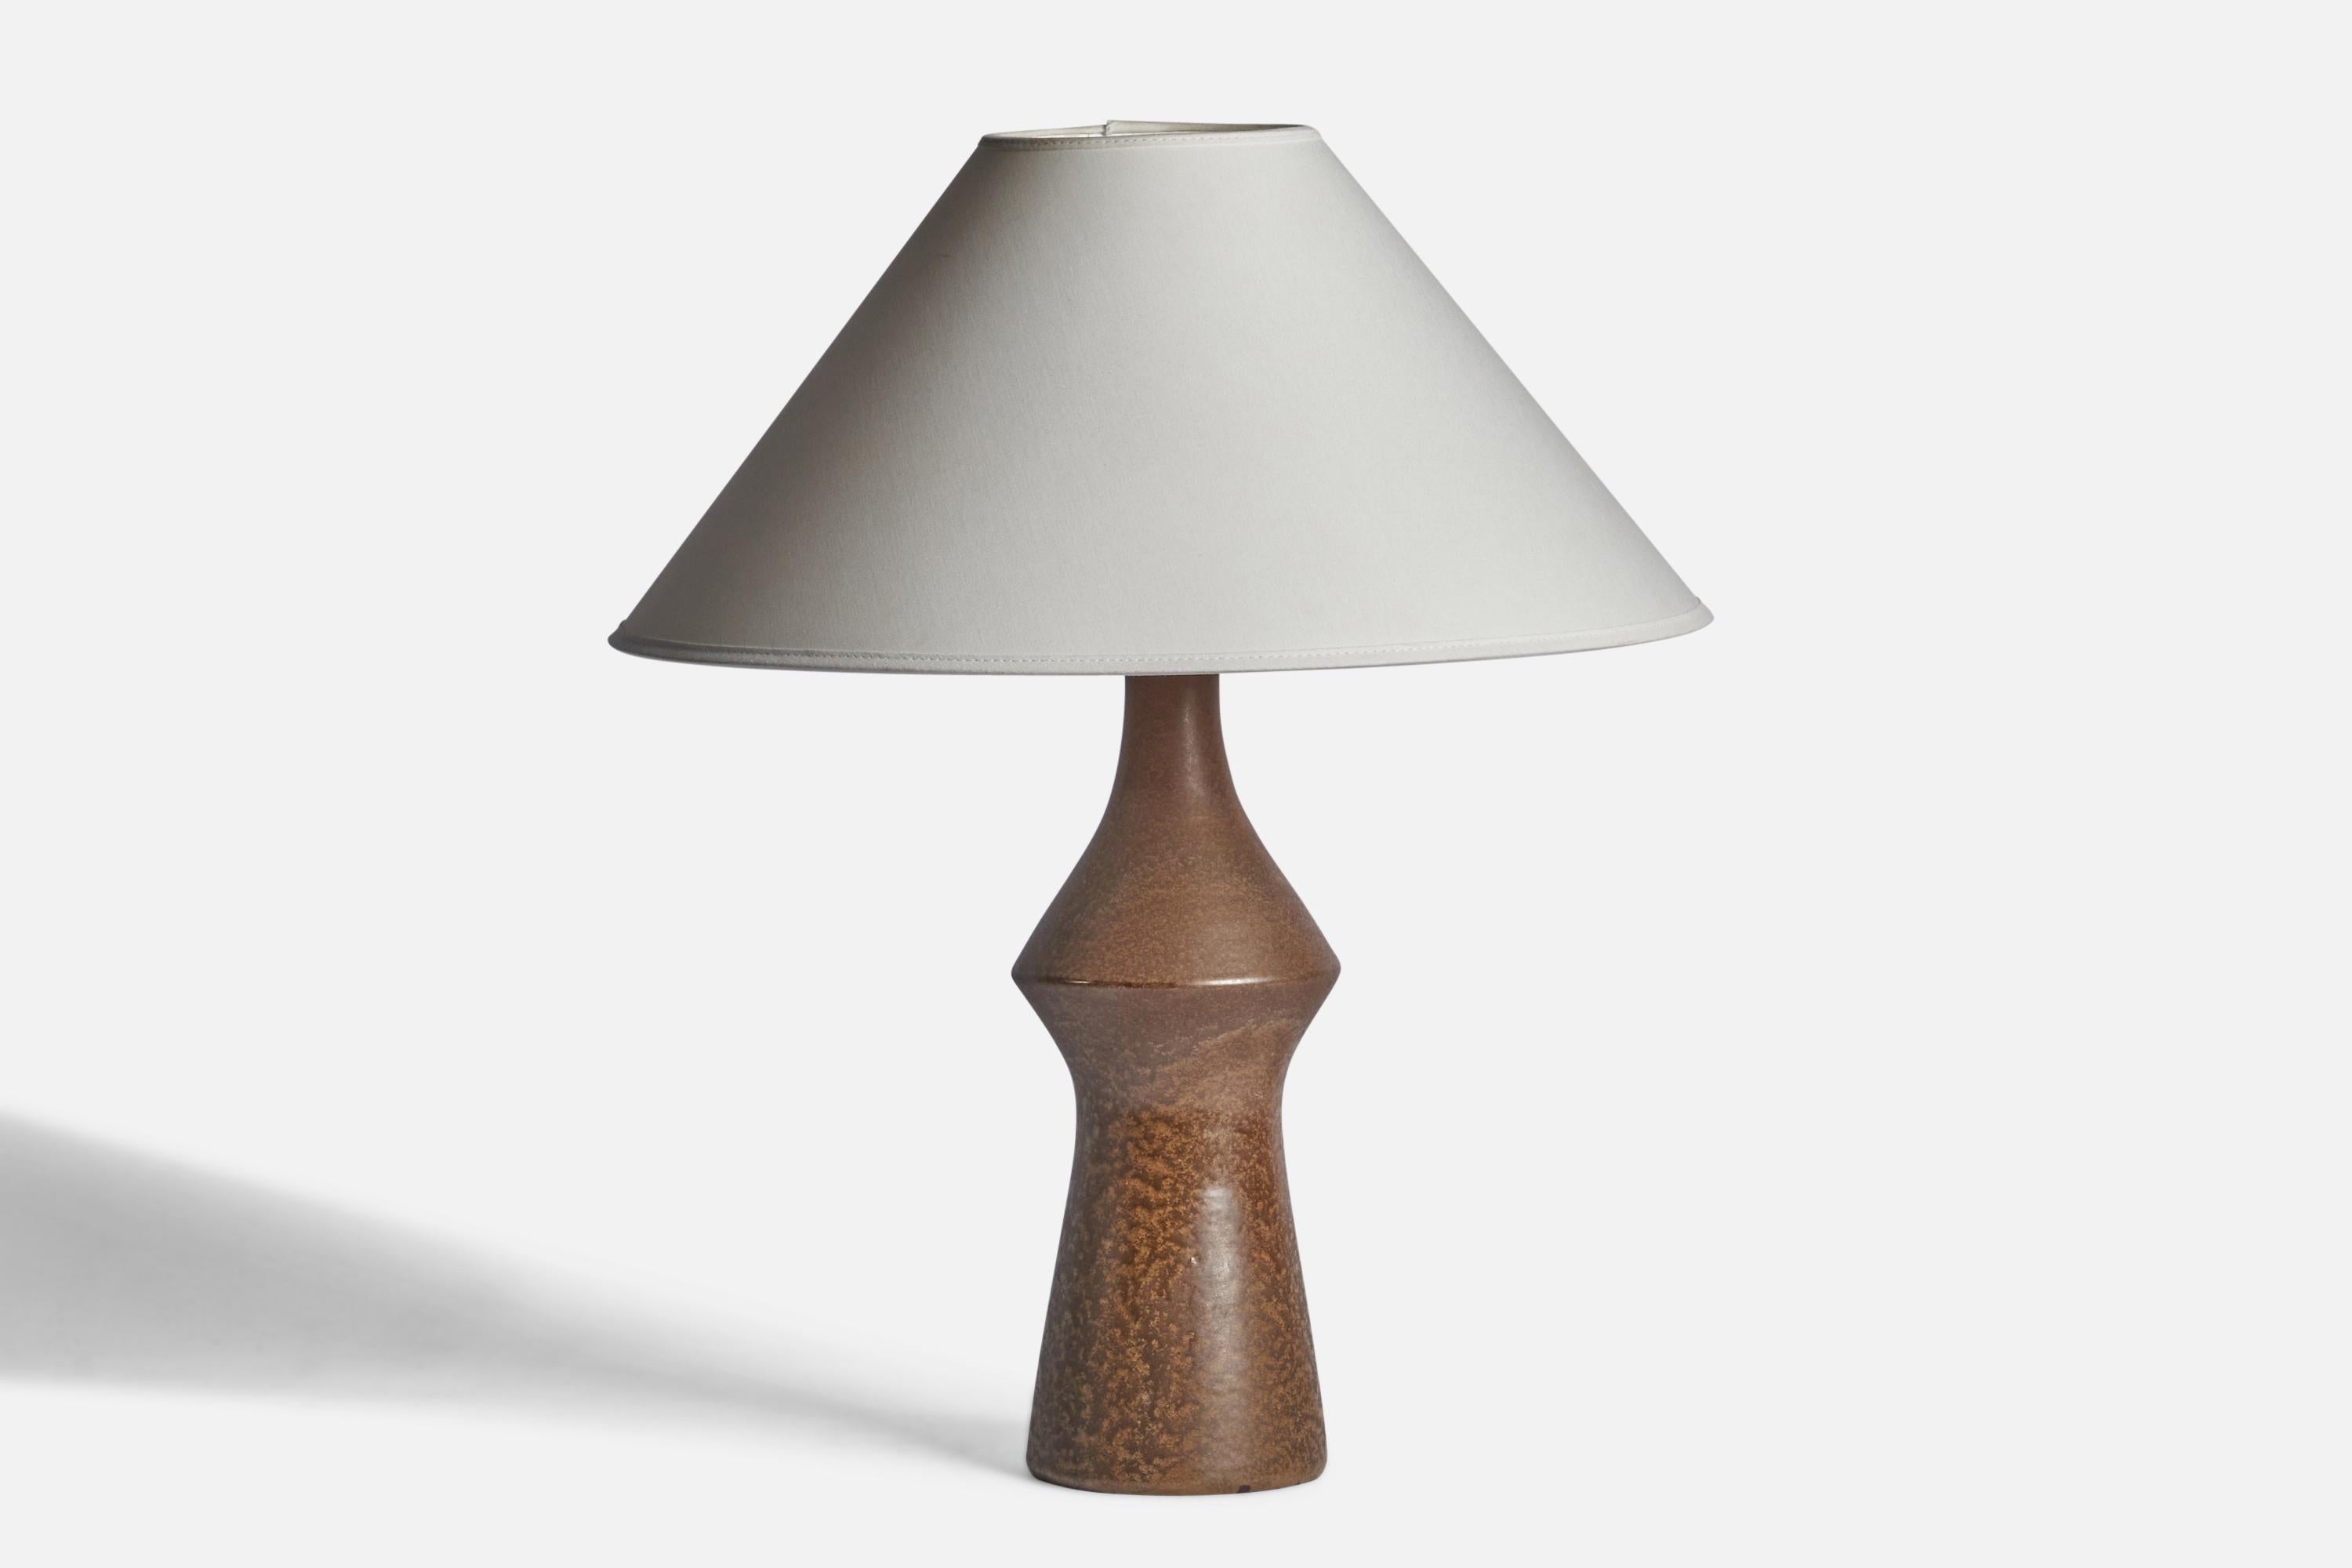 Tischlampe aus braun glasiertem Steingut, entworfen und hergestellt in Schweden, 1960er Jahre.

Abmessungen der Lampe (Zoll): 15,25